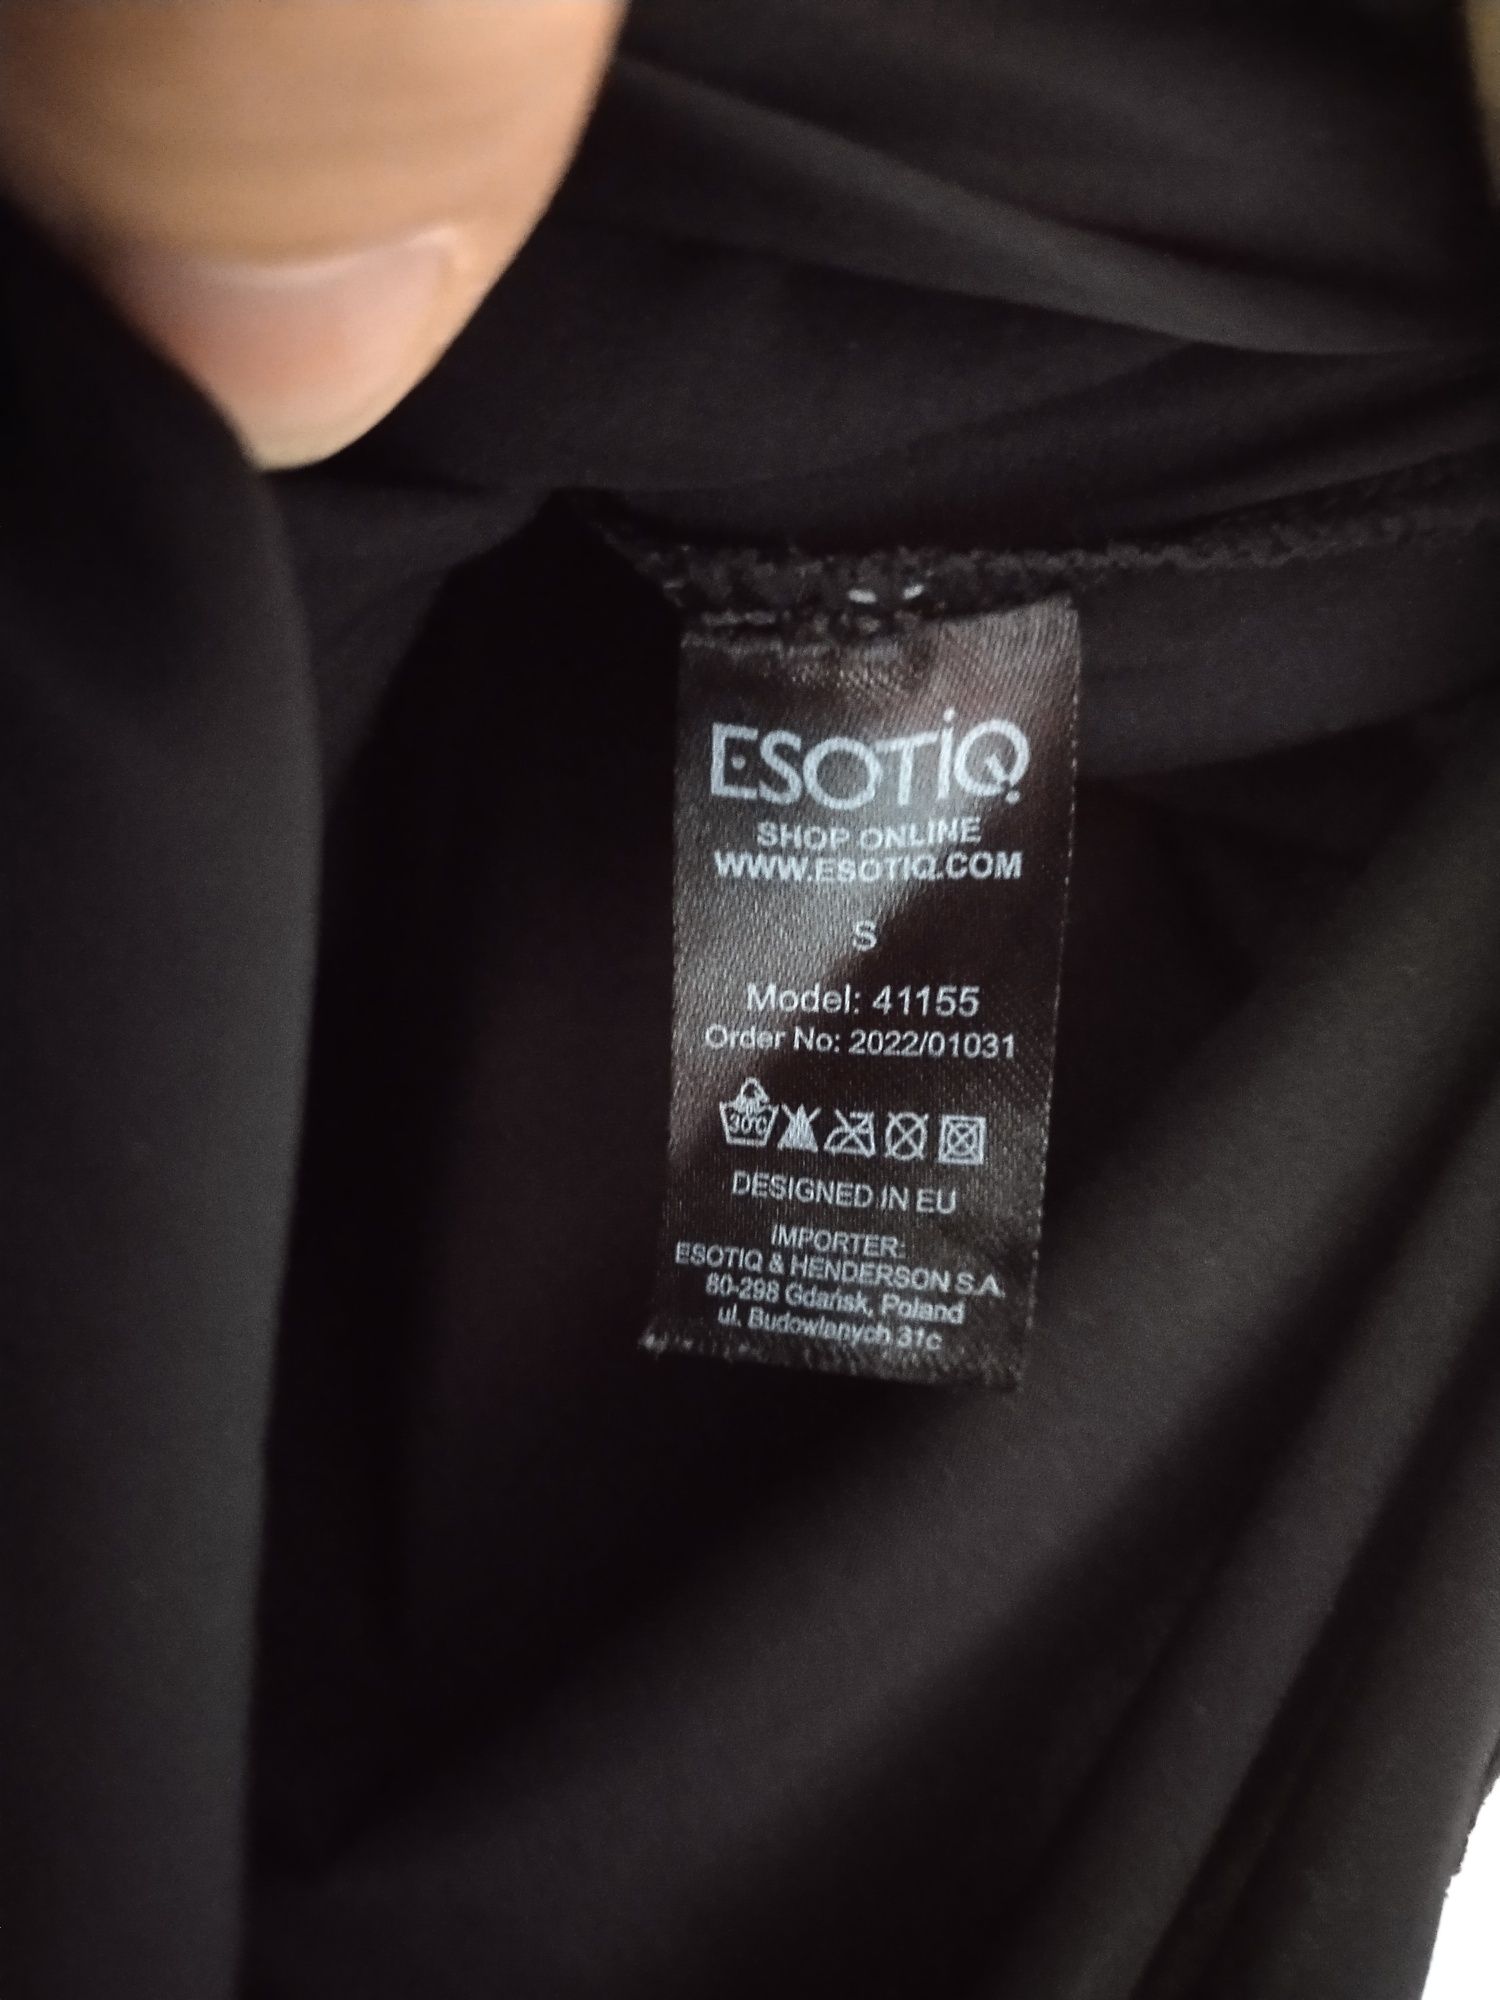 Esotiq szlafrok koszulka nocna Ewa Minge 36 S